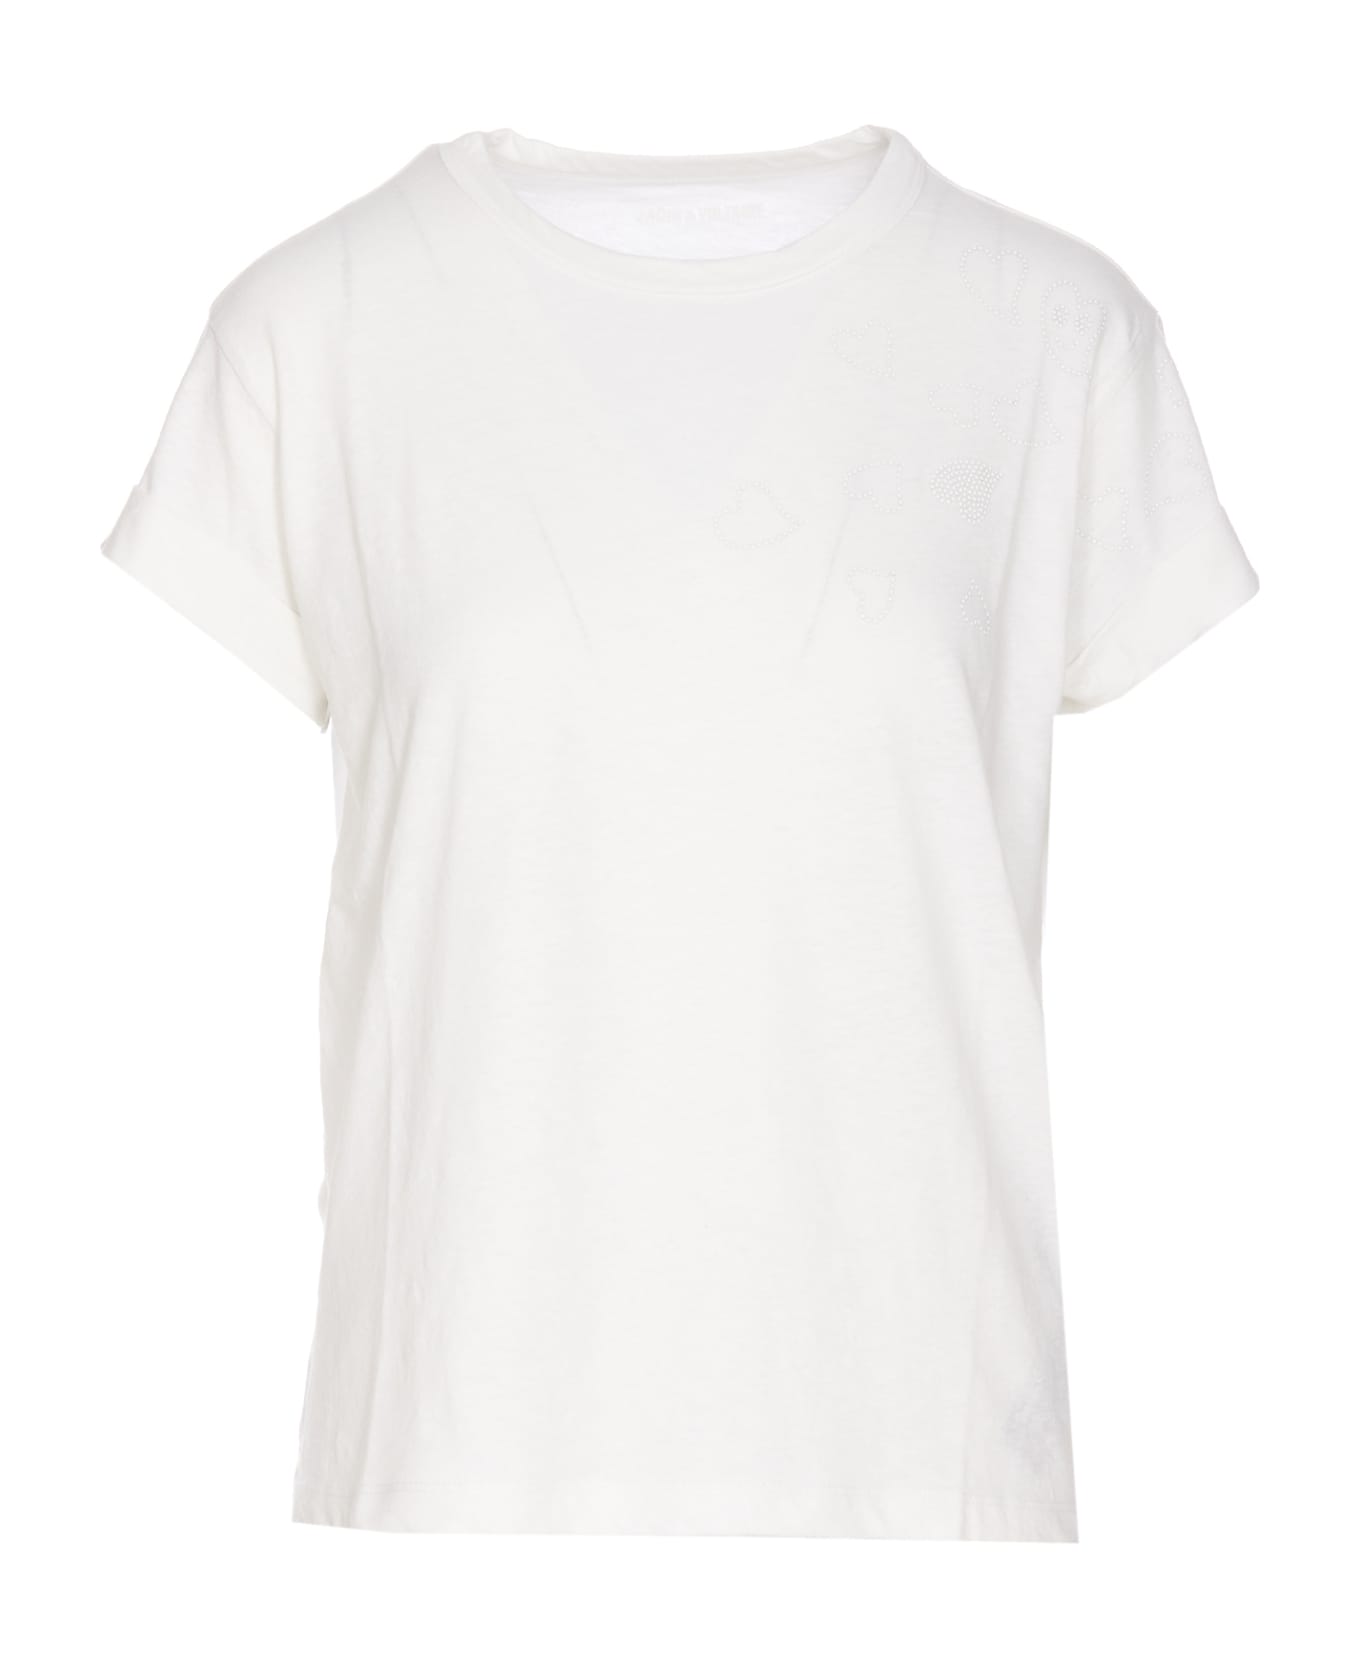 Zadig & Voltaire Anya Rain Stud T-shirt - White